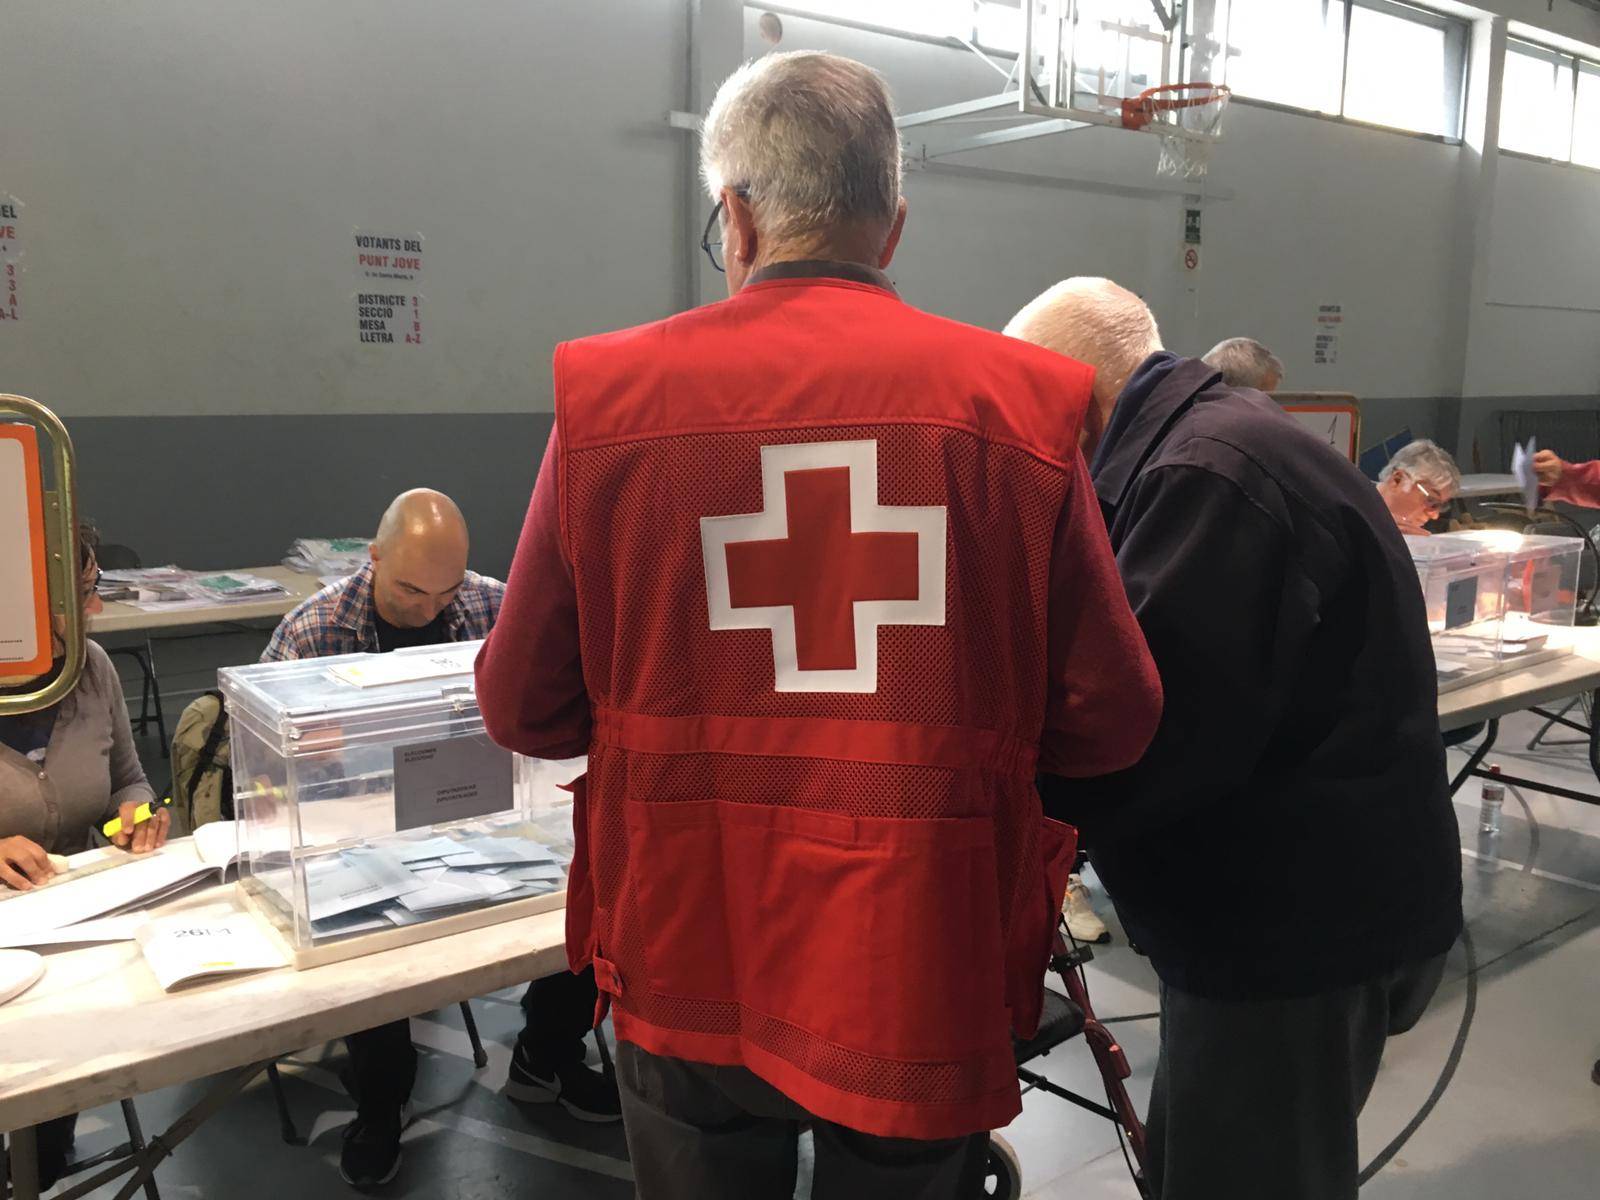 La Creu Roja ofereix el servei d’acompanyament a persones amb mobilitat reduïda als col·legis electorals